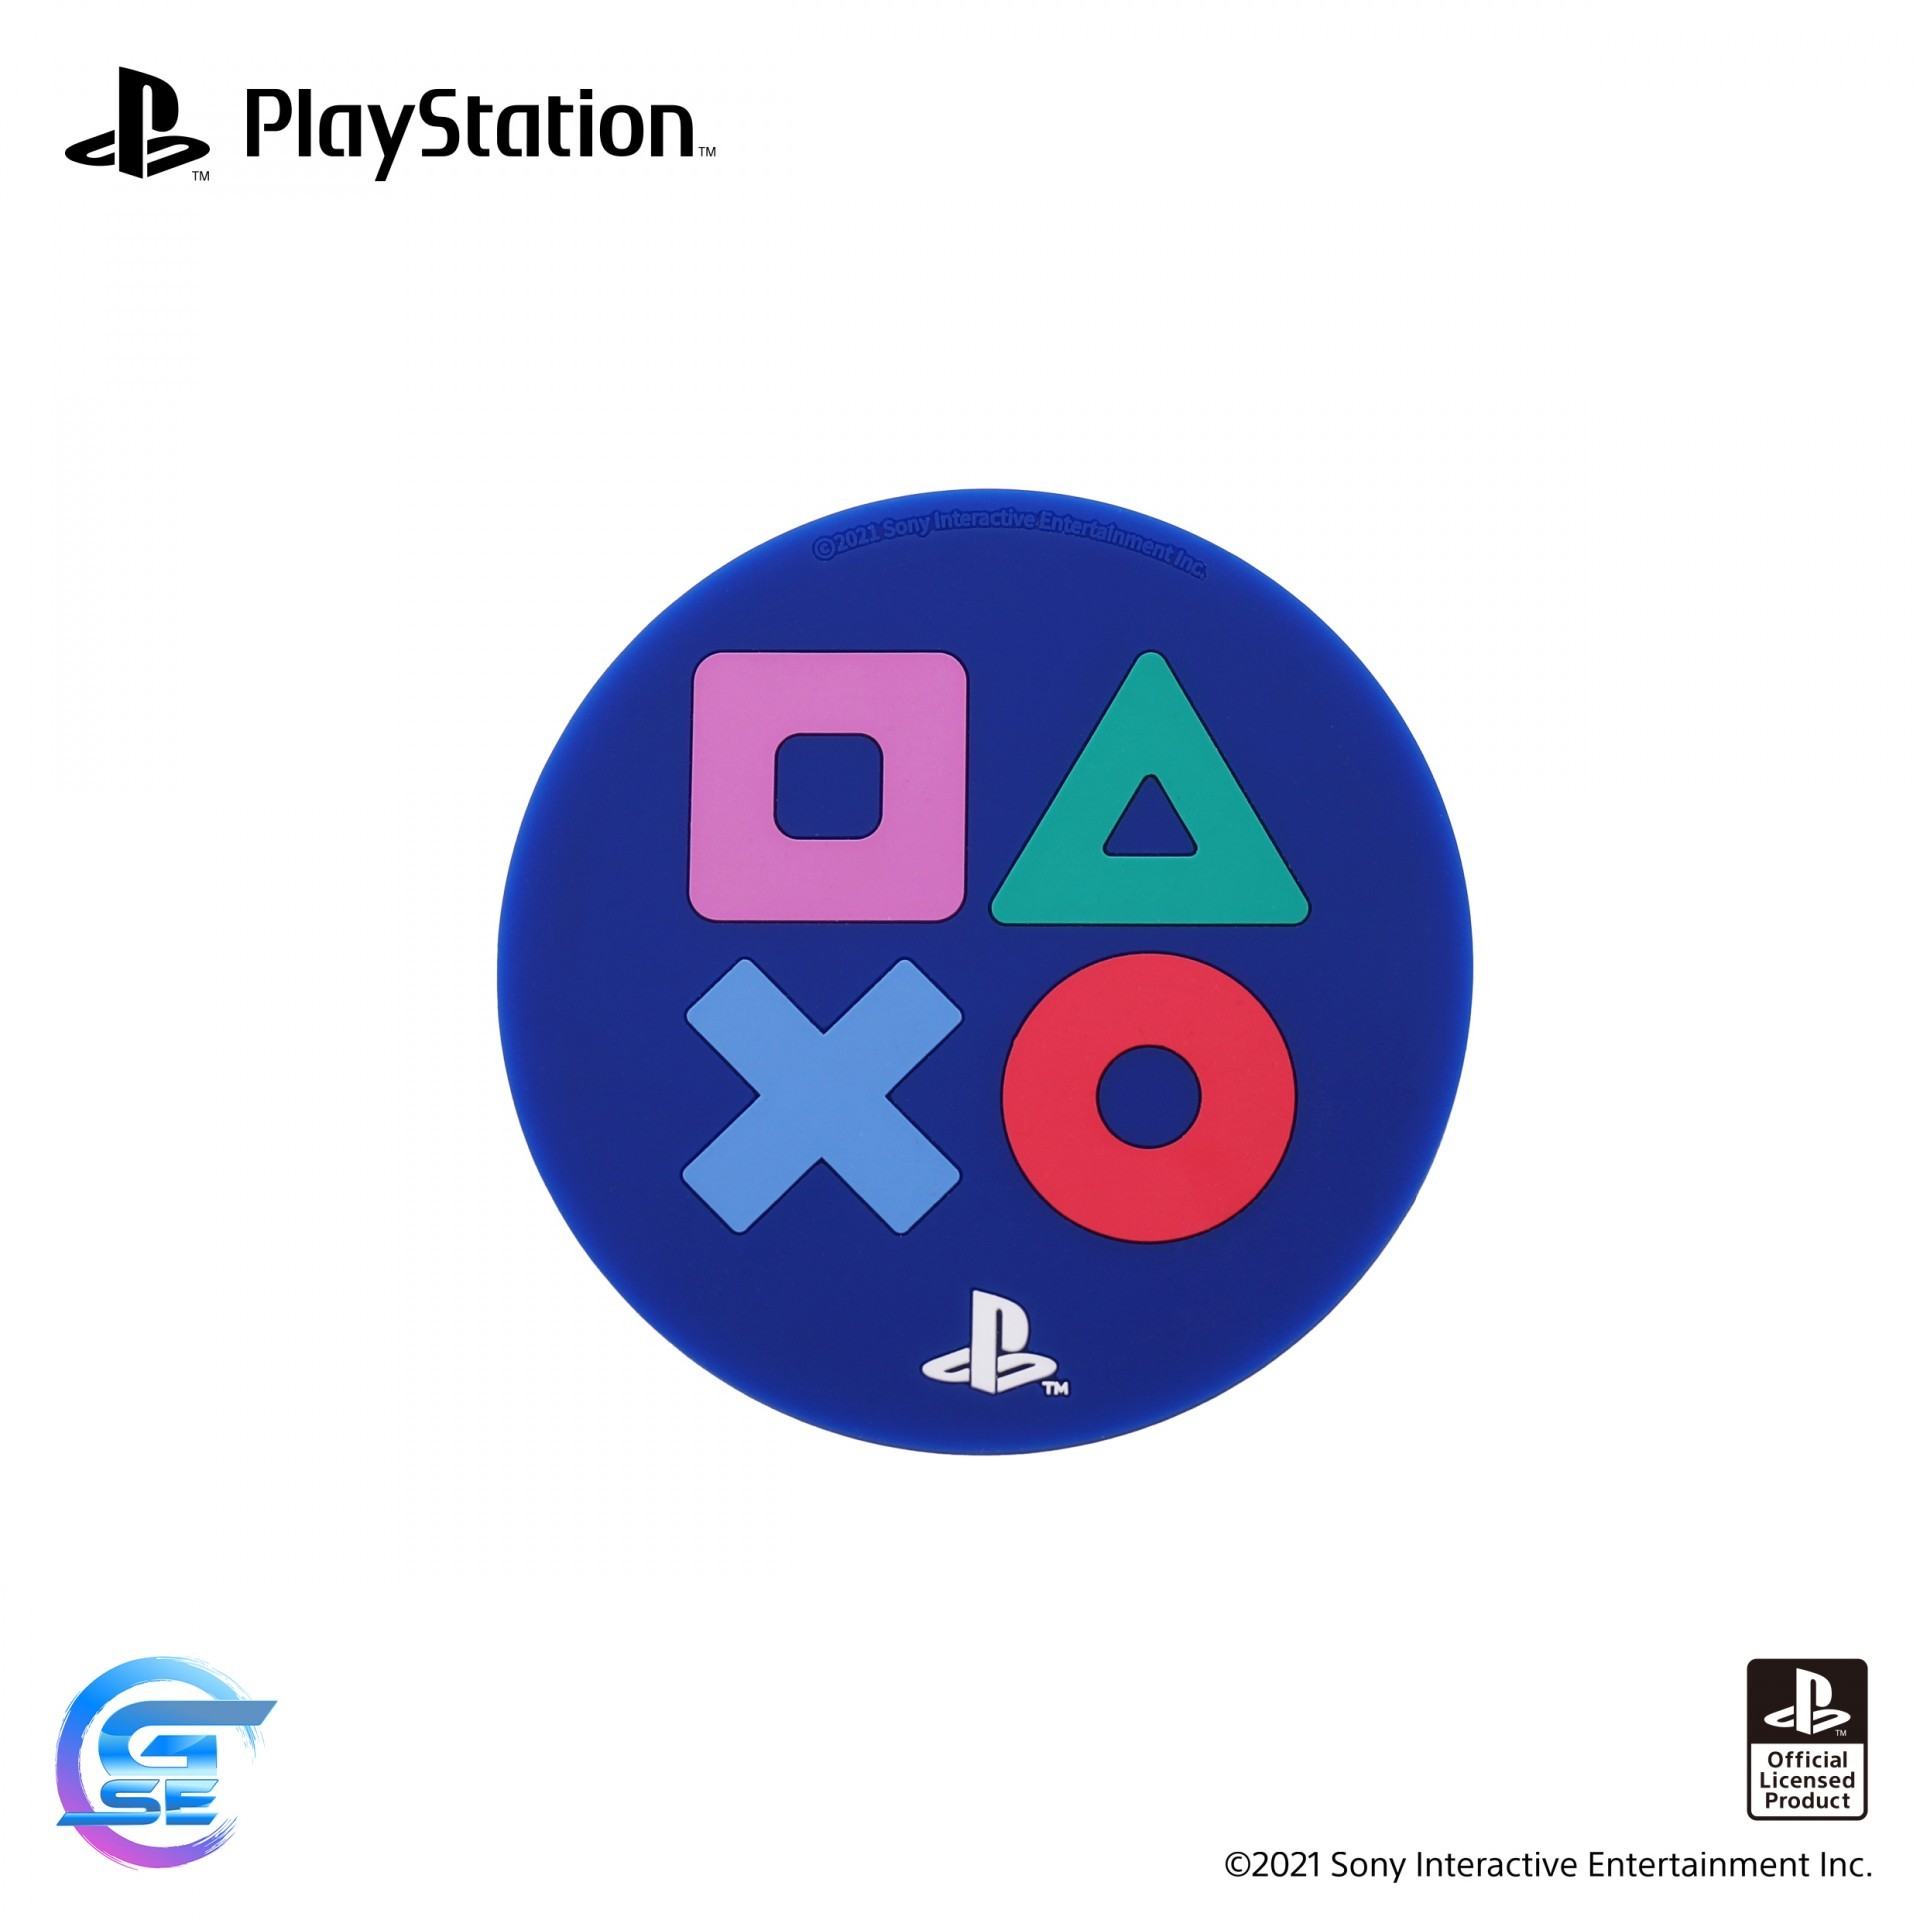 官方授权 PlayStation 主题周边商品 9 月 3 日在台上市